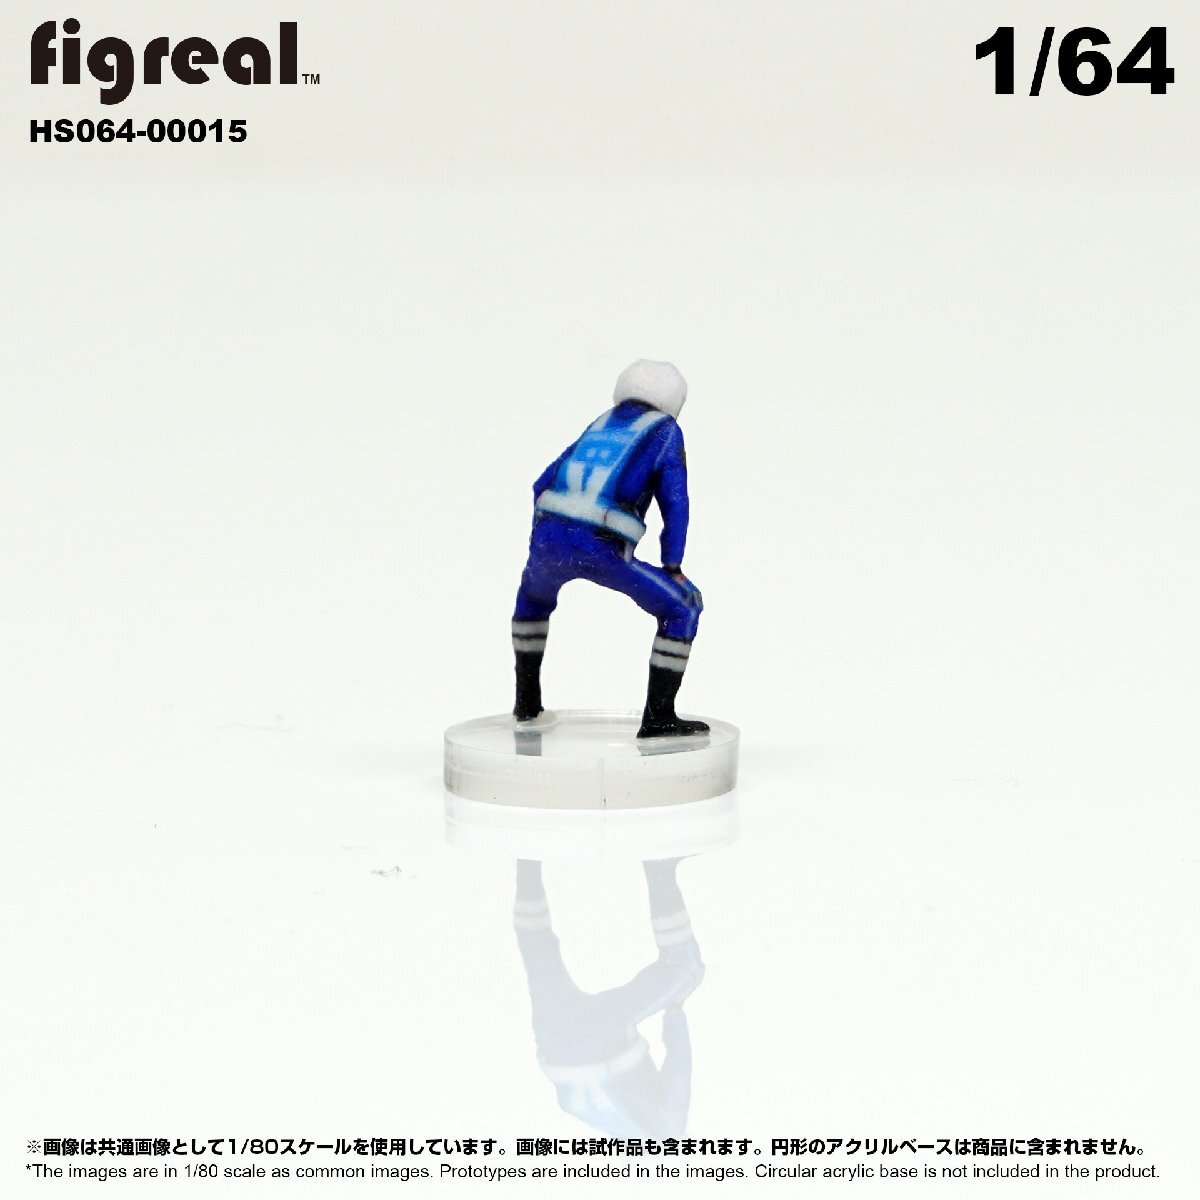 HS064-00015 figreal 日本白バイ隊員 1/64 高精細フィギュア_画像5